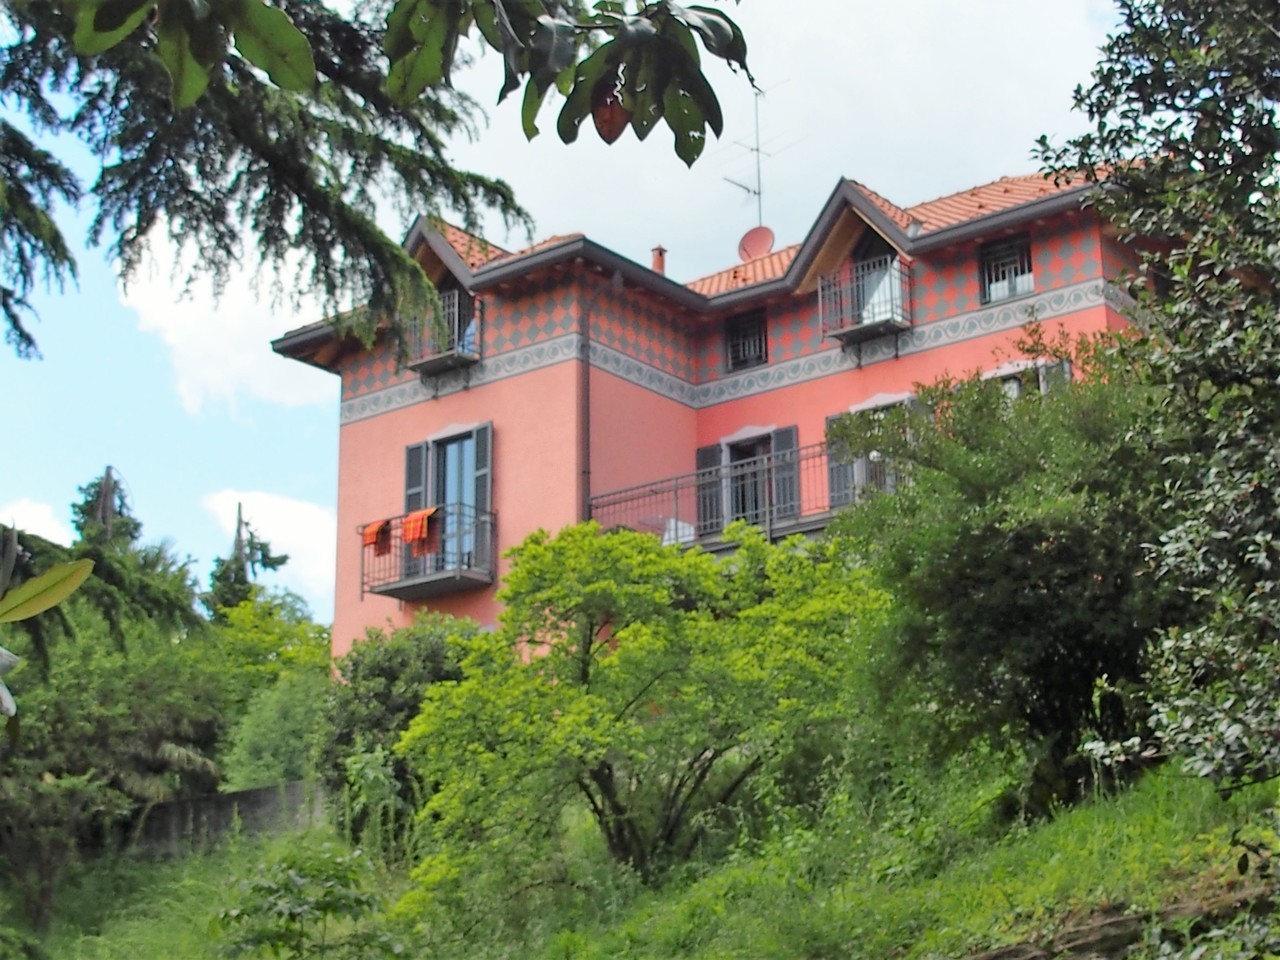 A vendre villa in zone tranquille Como Lombardia